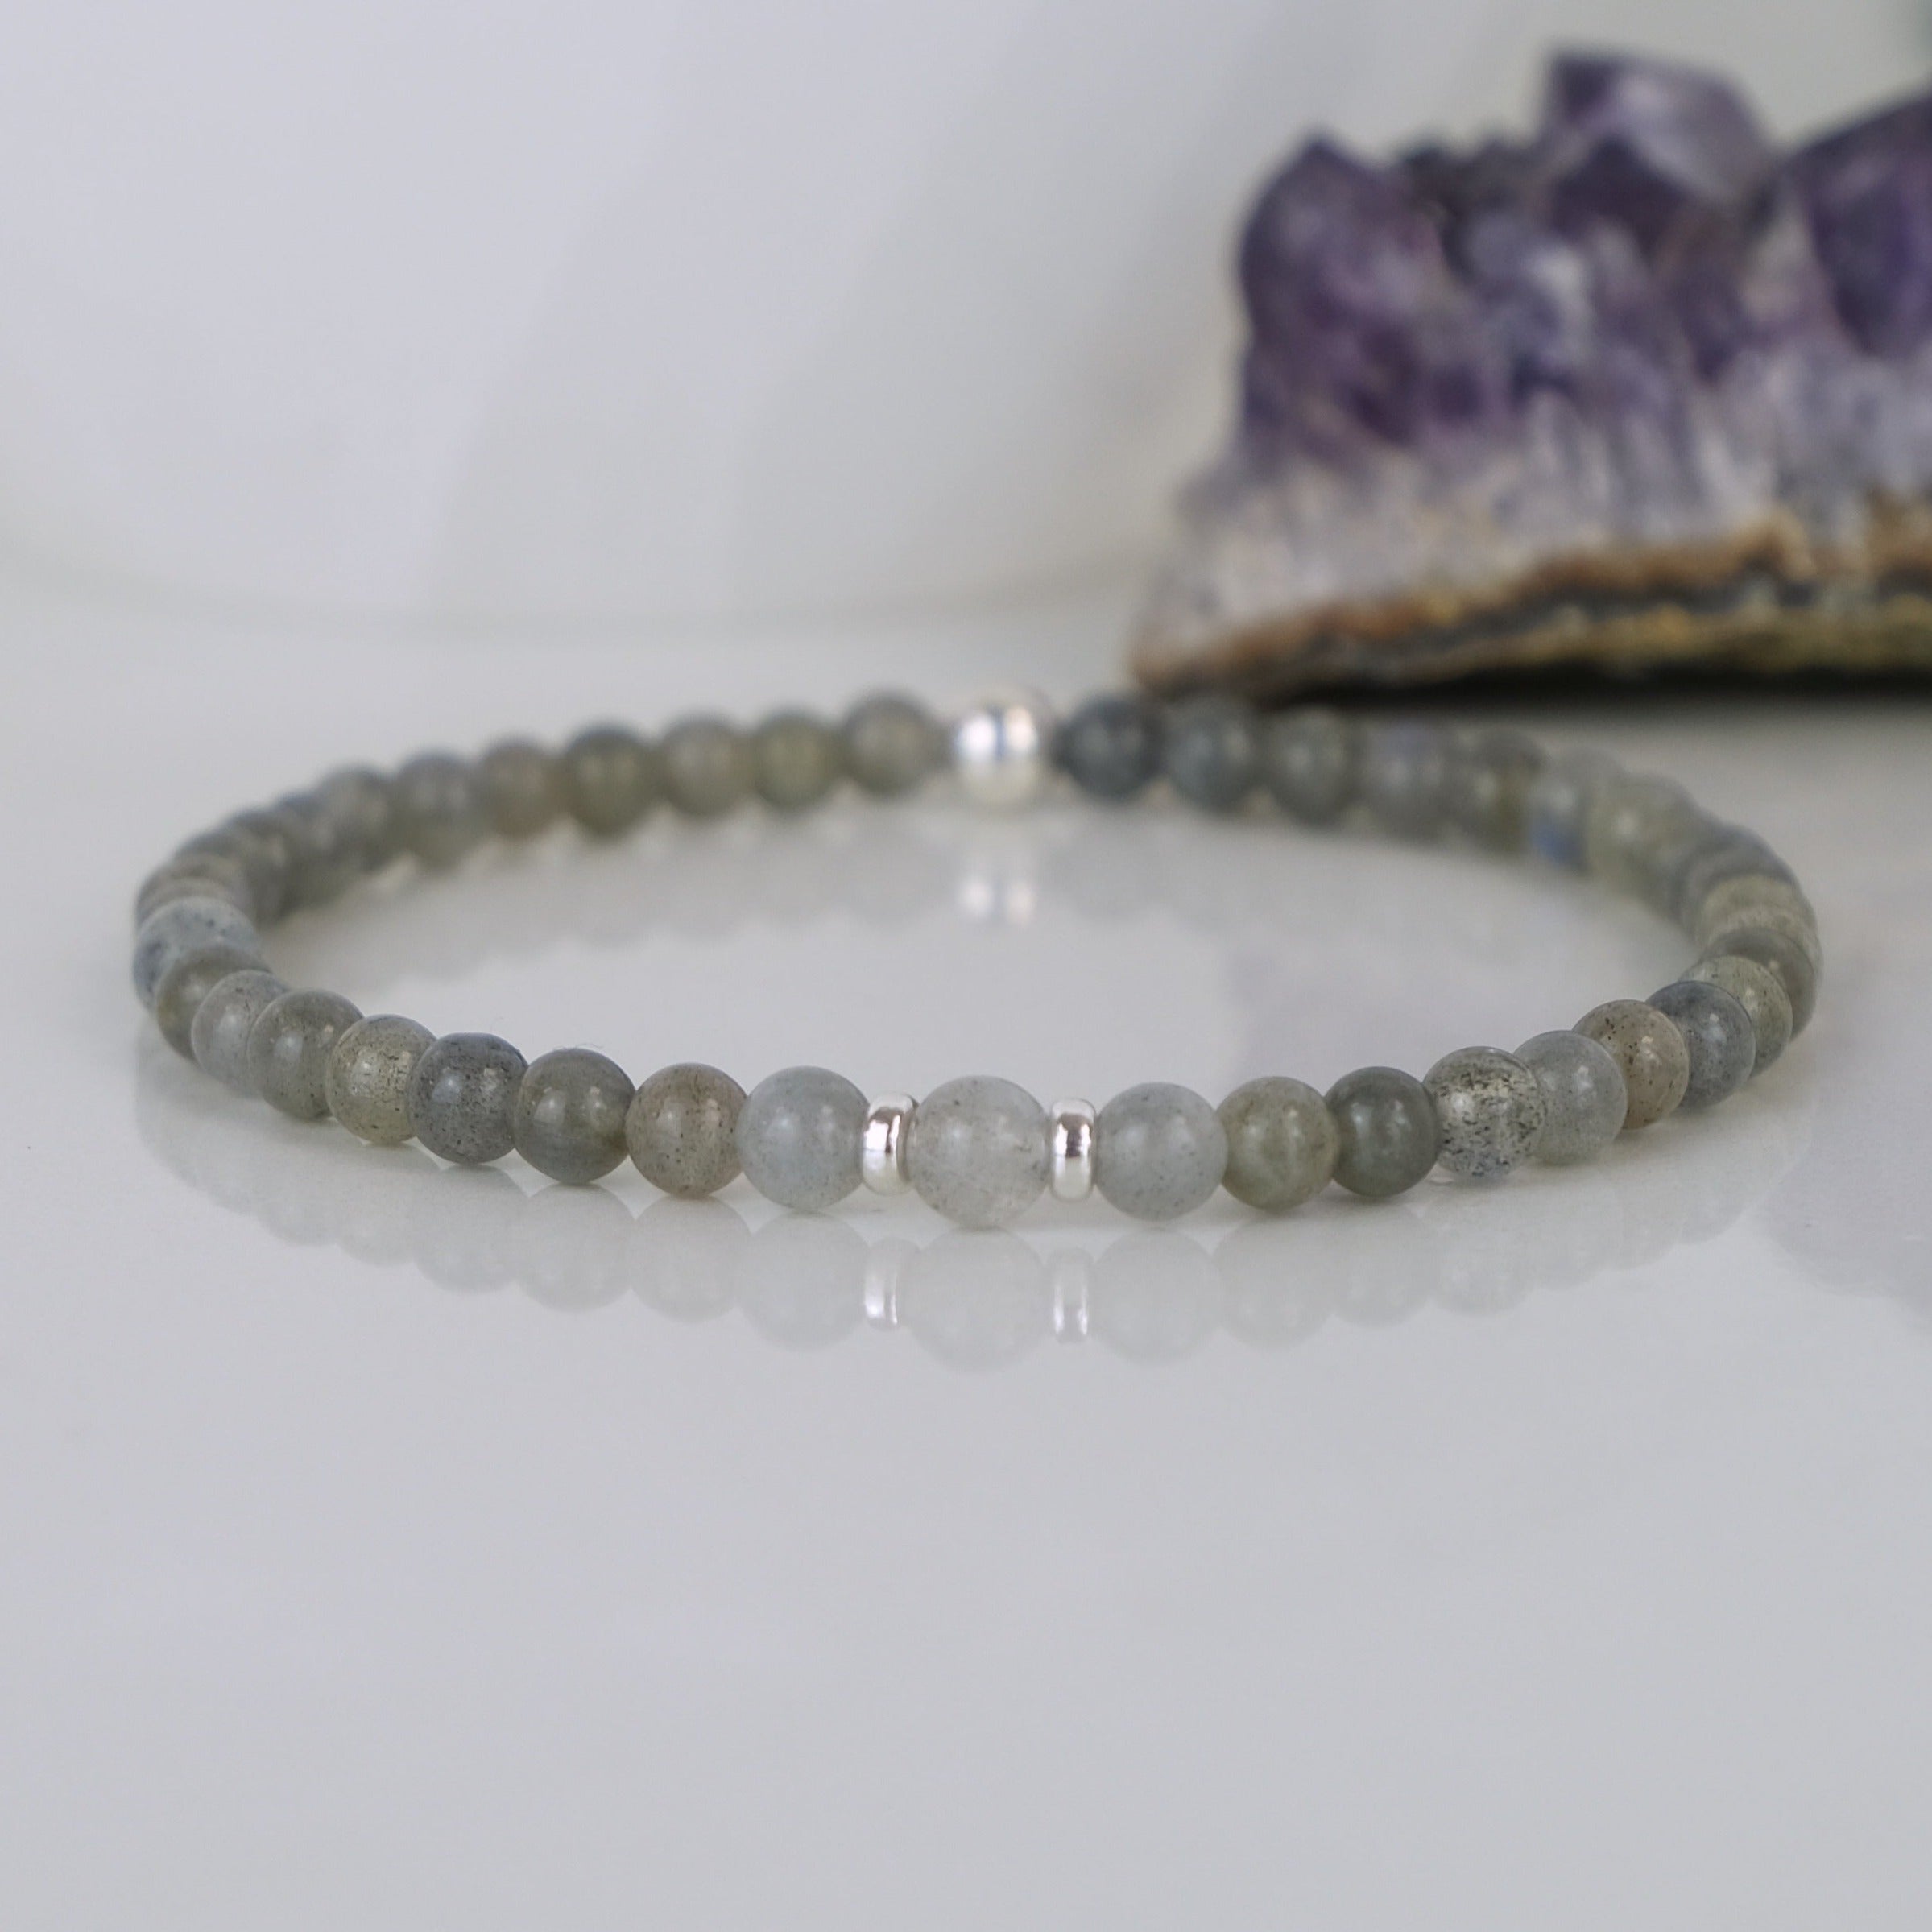 4mm labradorite gemstone bracelet with silver accessories